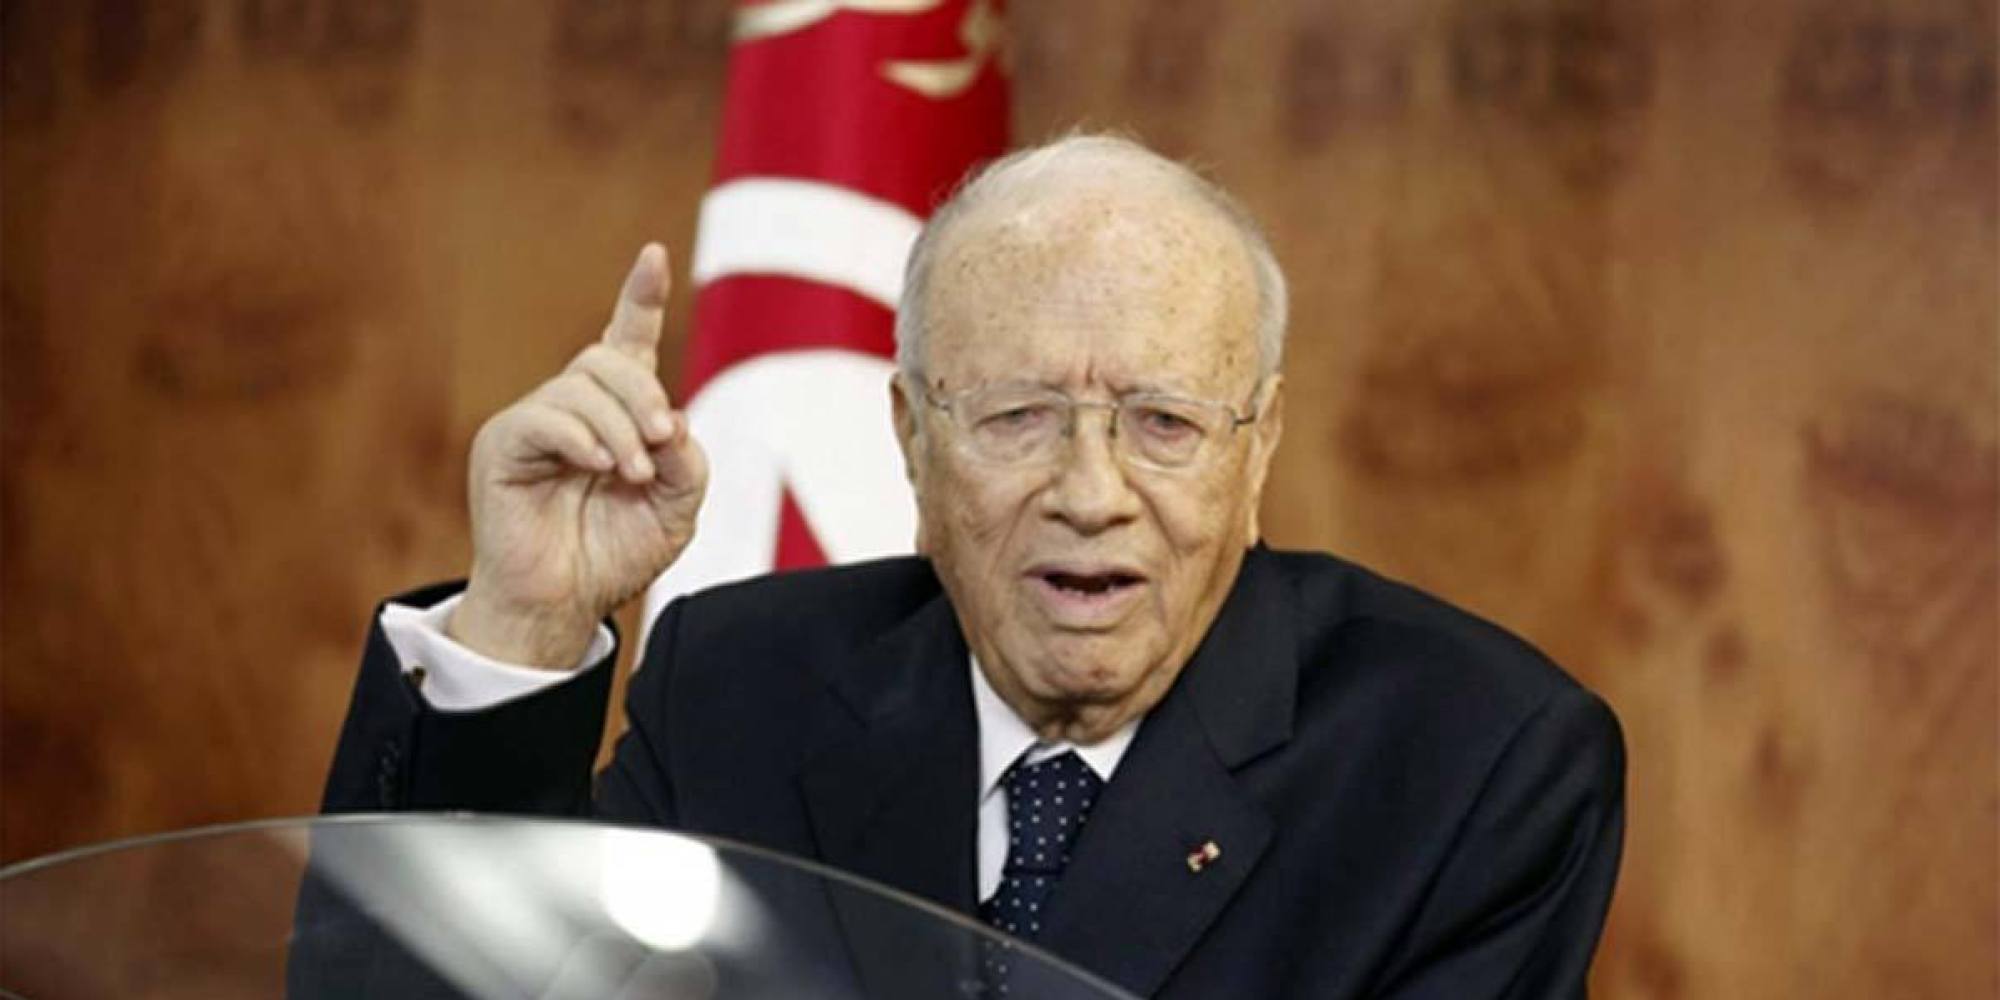   تونس تشيع جنازة رئيسها الراحل قايد السبسى